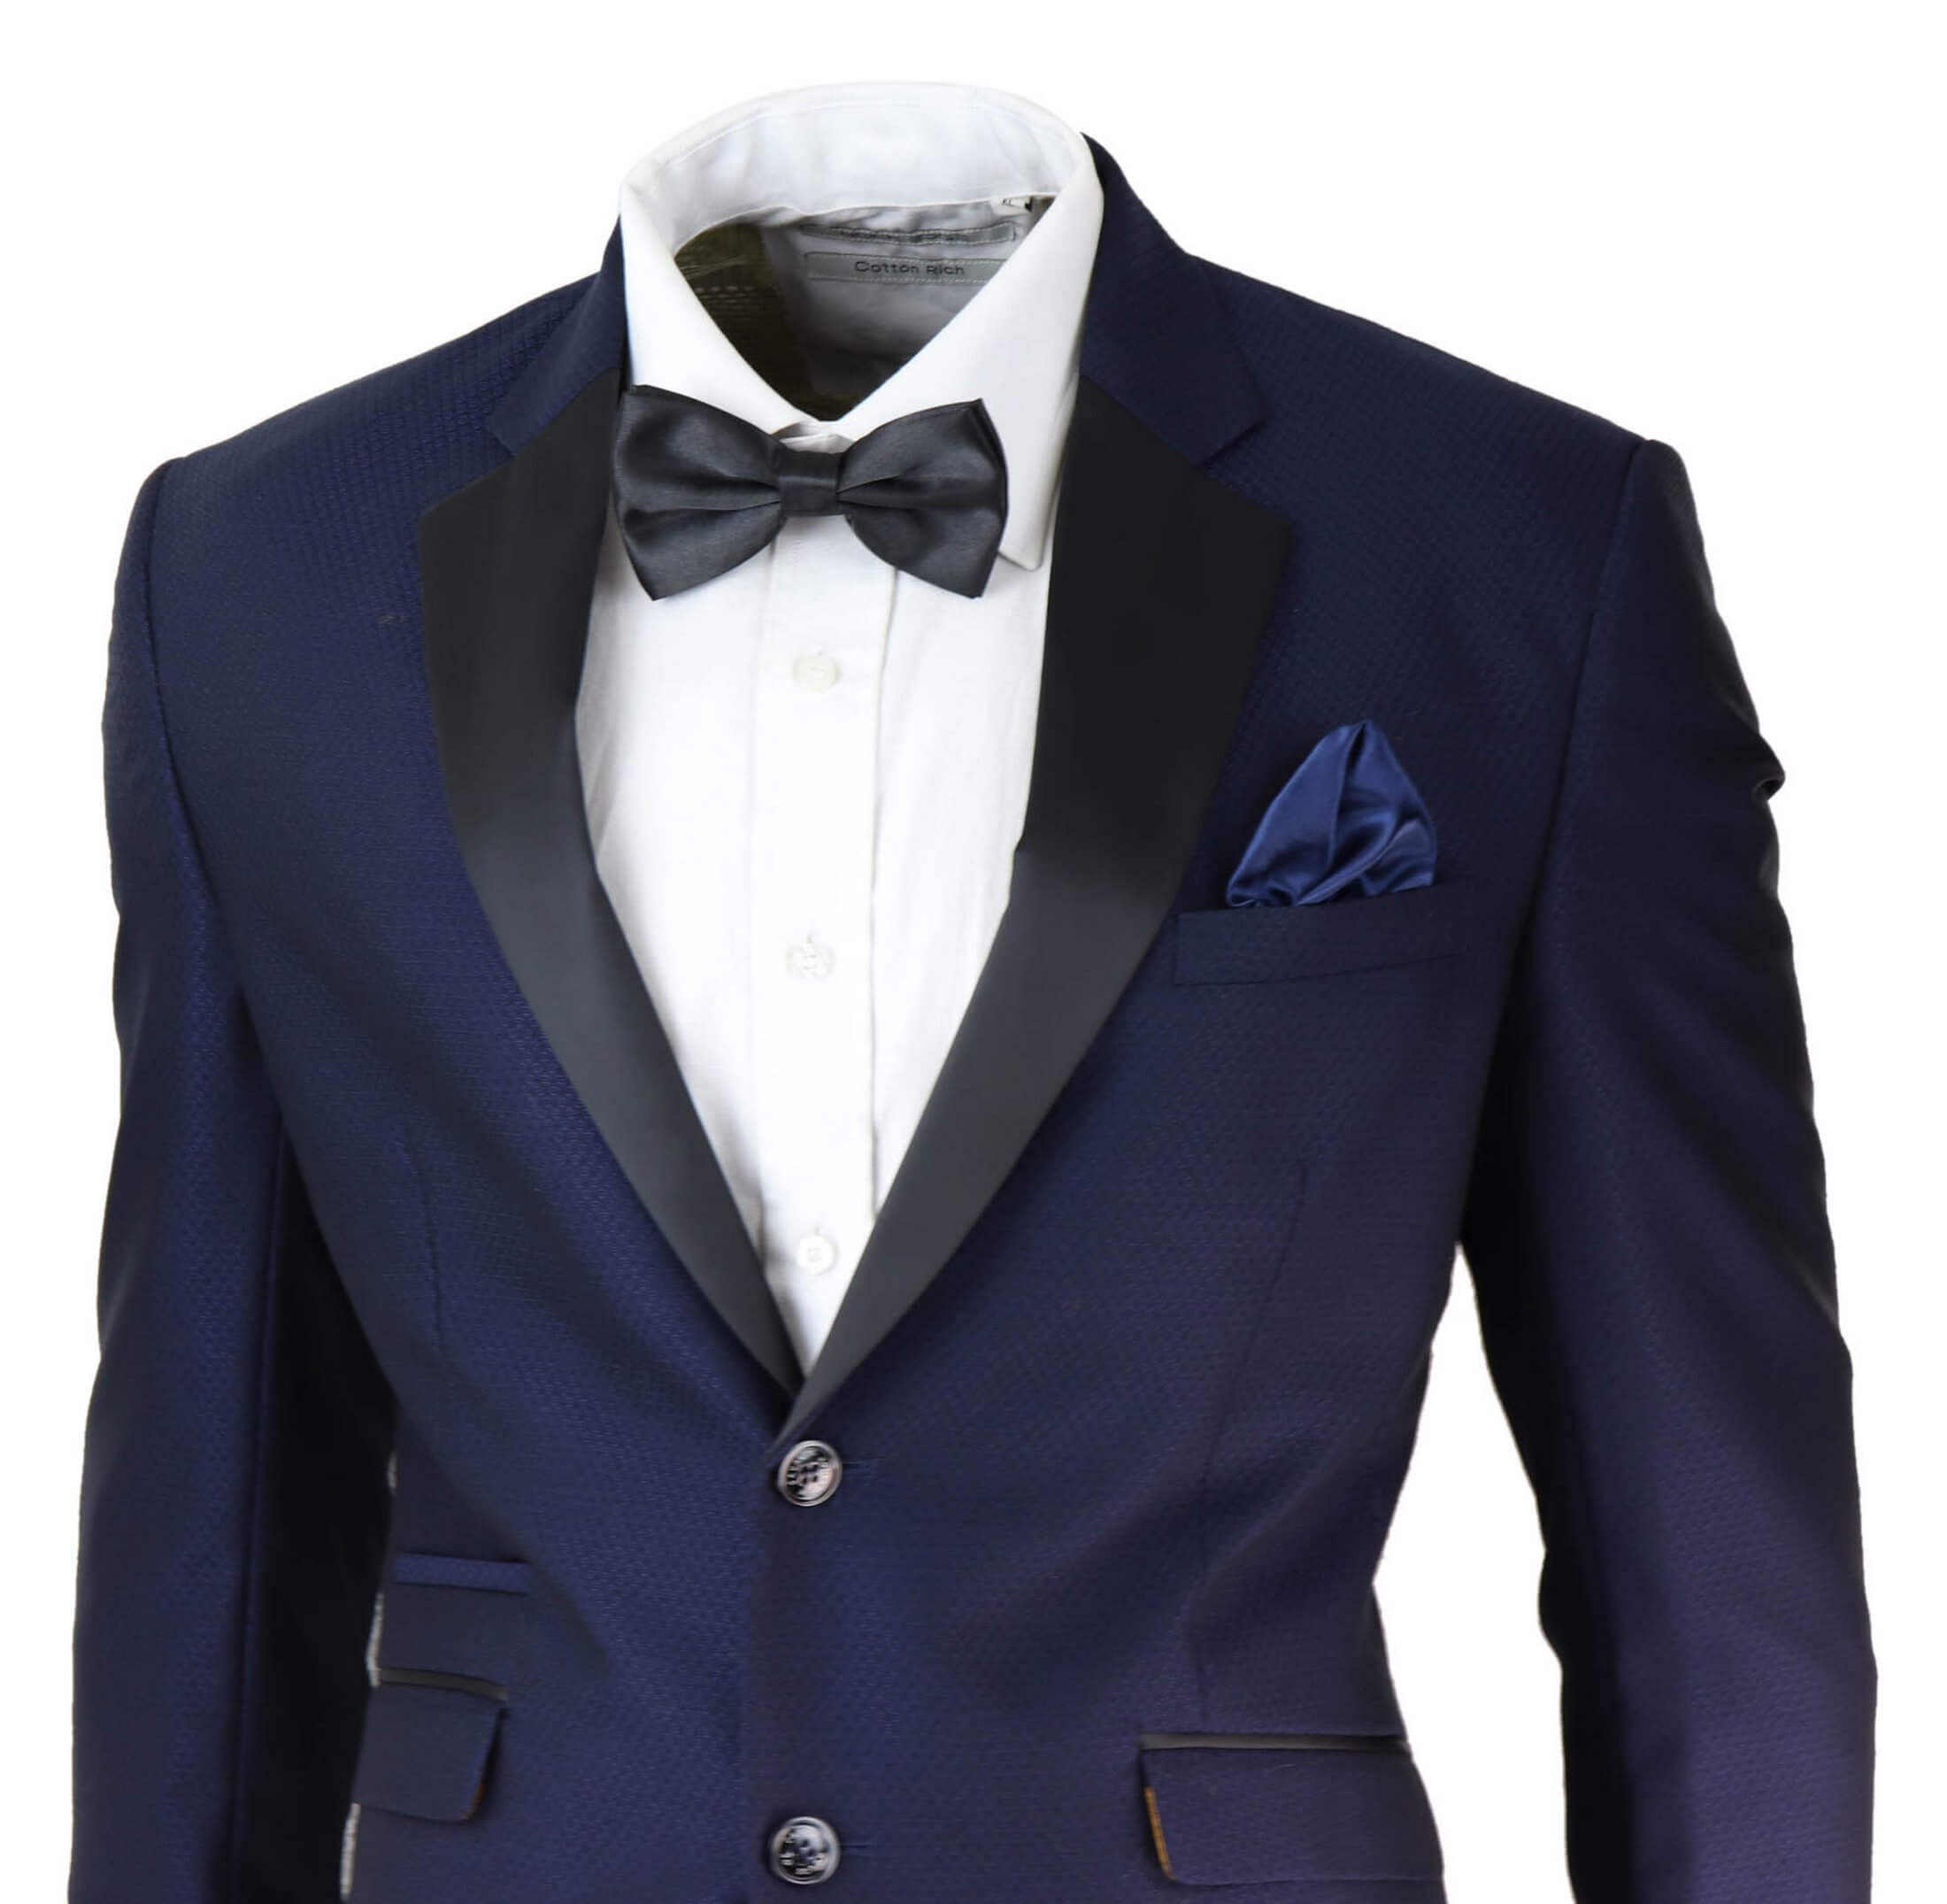 Mens Blue Tuxedo Dinner Suit Buy Online Happy Gentleman